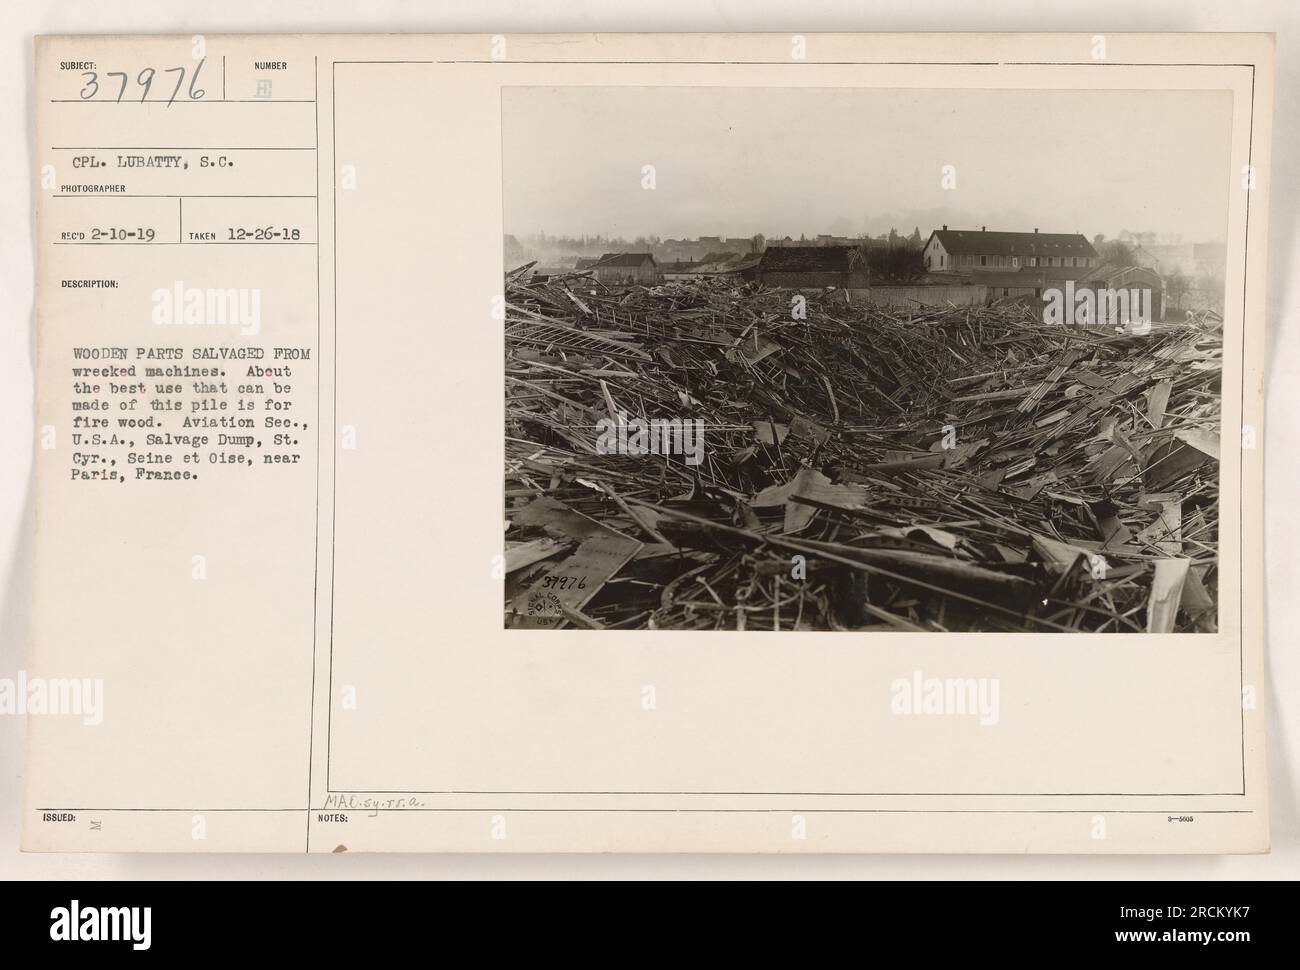 Ein Stapel von Holzteilen, die aus zerstörten Maschinen geborgen wurden und als Brennholz in der Aviation sec., USA, Bergungskippe, St. Cyr., seine et Oise, bei Paris, Frankreich. Das Foto wurde von CPL aufgenommen. Lubatty, S.C., am 26. Dezember 1918. (111-SC-37976) Stockfoto